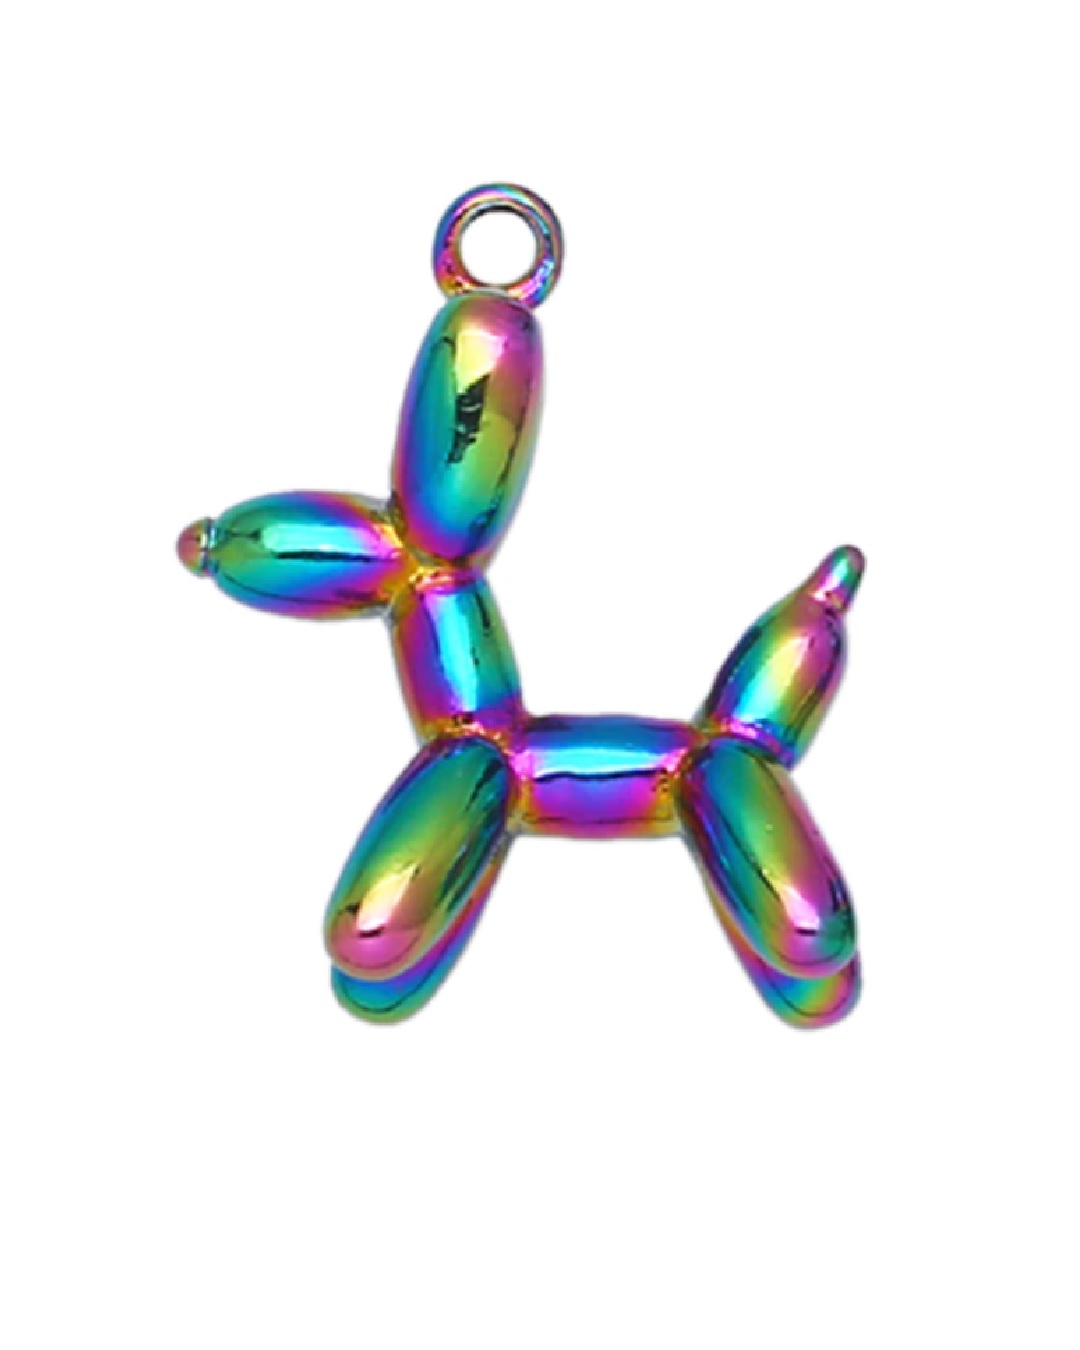 Rainbow metallic balloon dog pendant